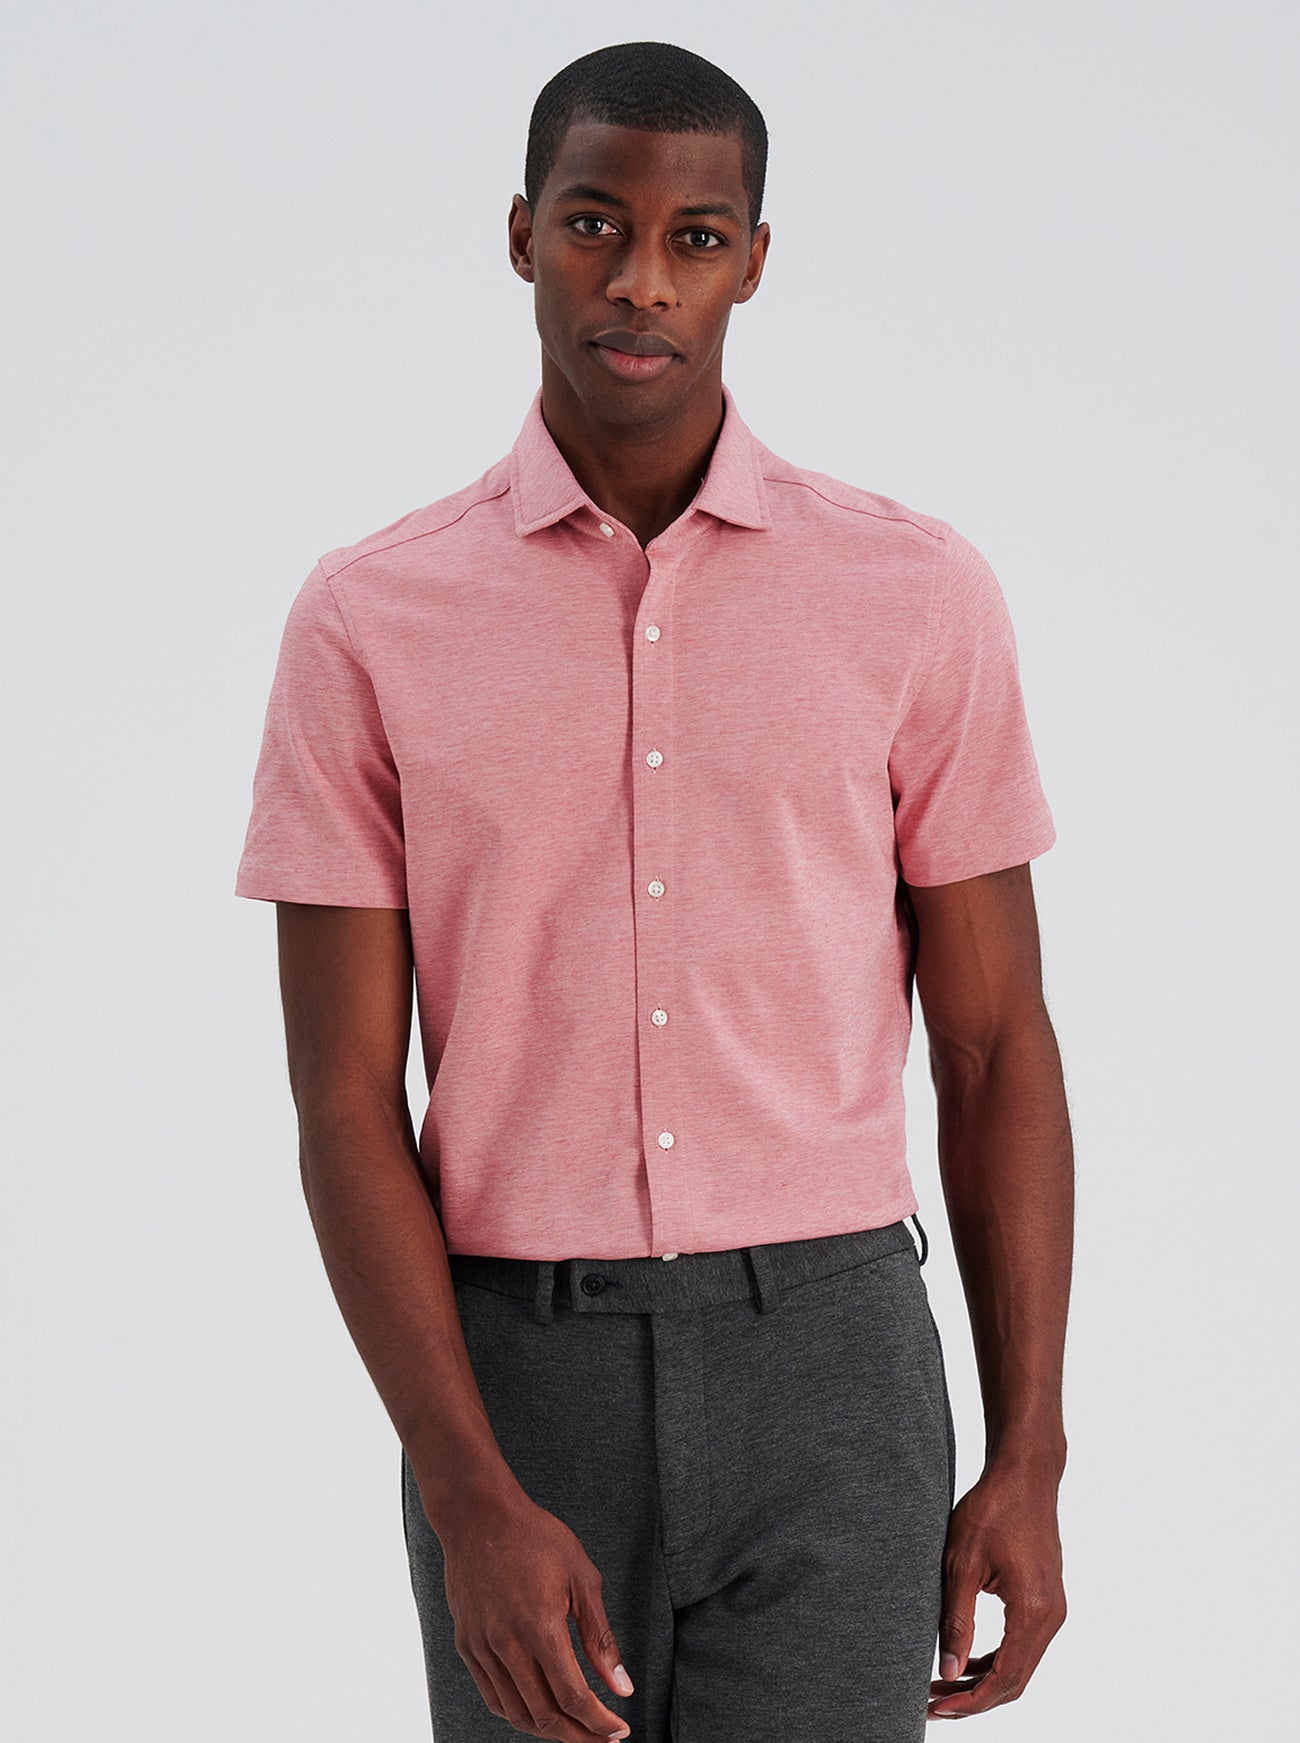 Short Sleeve Knit Shirt, Slim Fit Button Down Men's Shirt, 100 